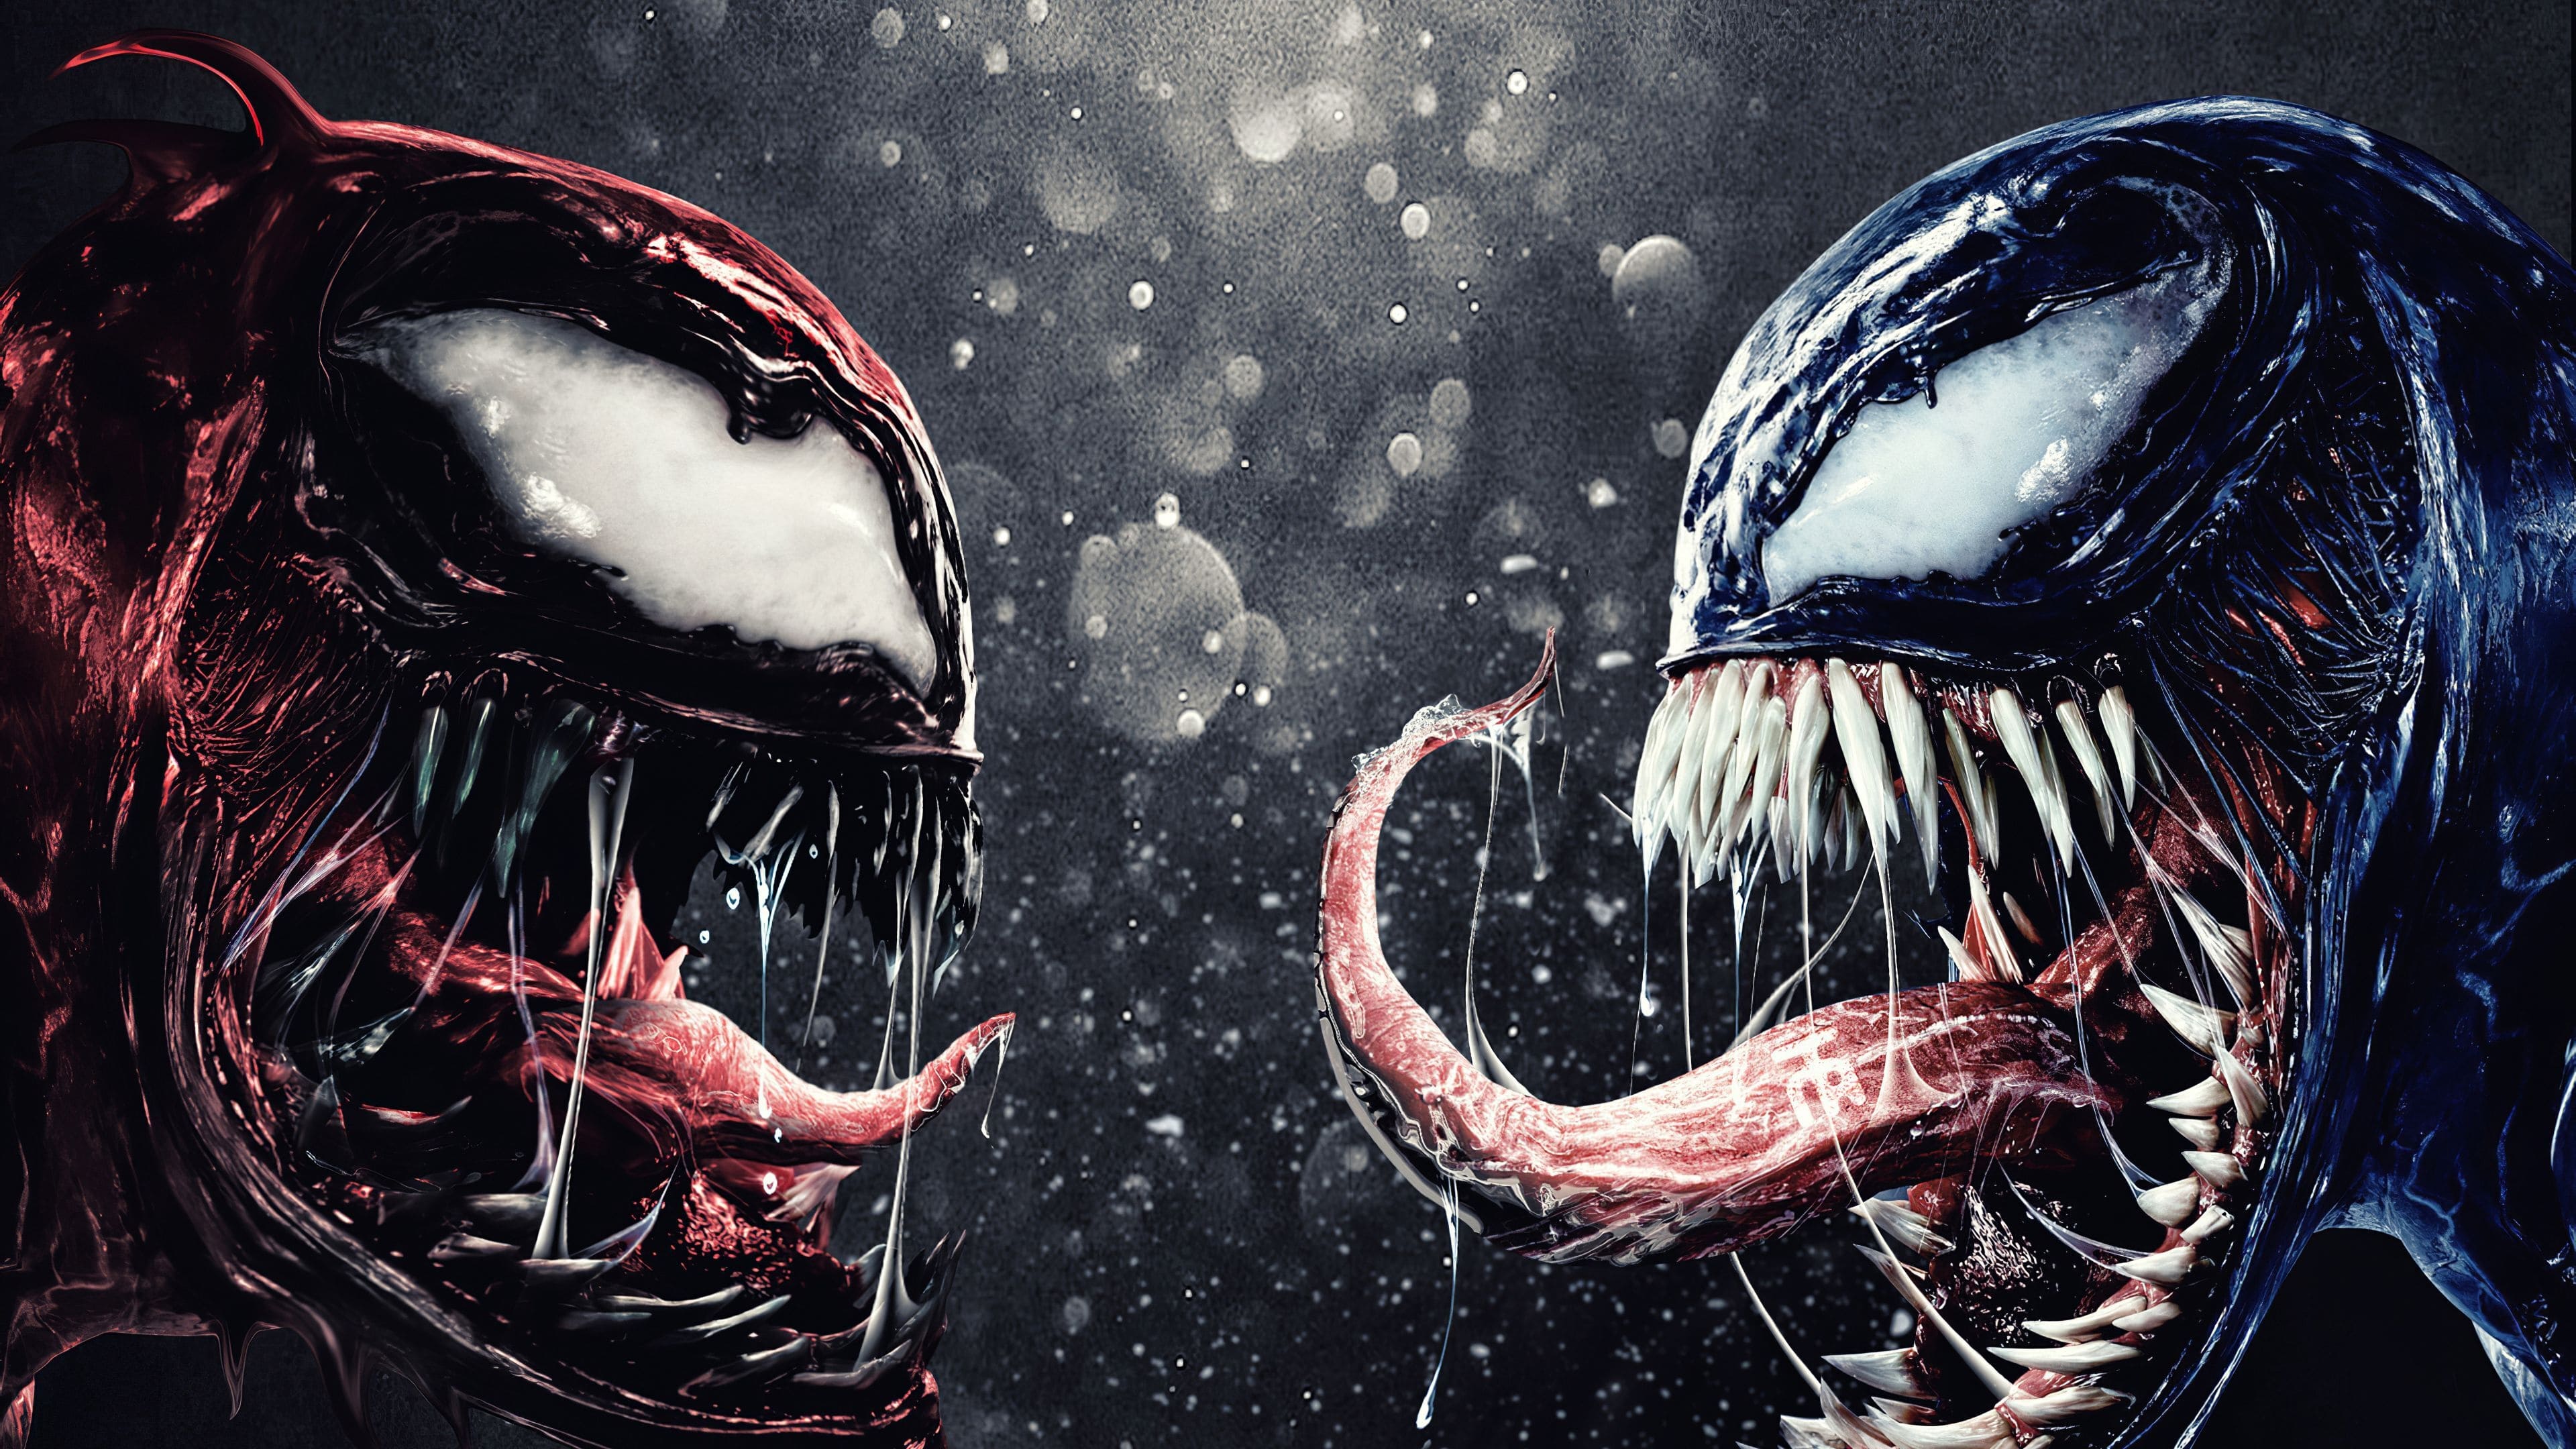 เวน่อม ศึกอสูรแดงเดือด 2 Venom 2 ออนไลน์โดยสมบูรณ์ในปี 2021